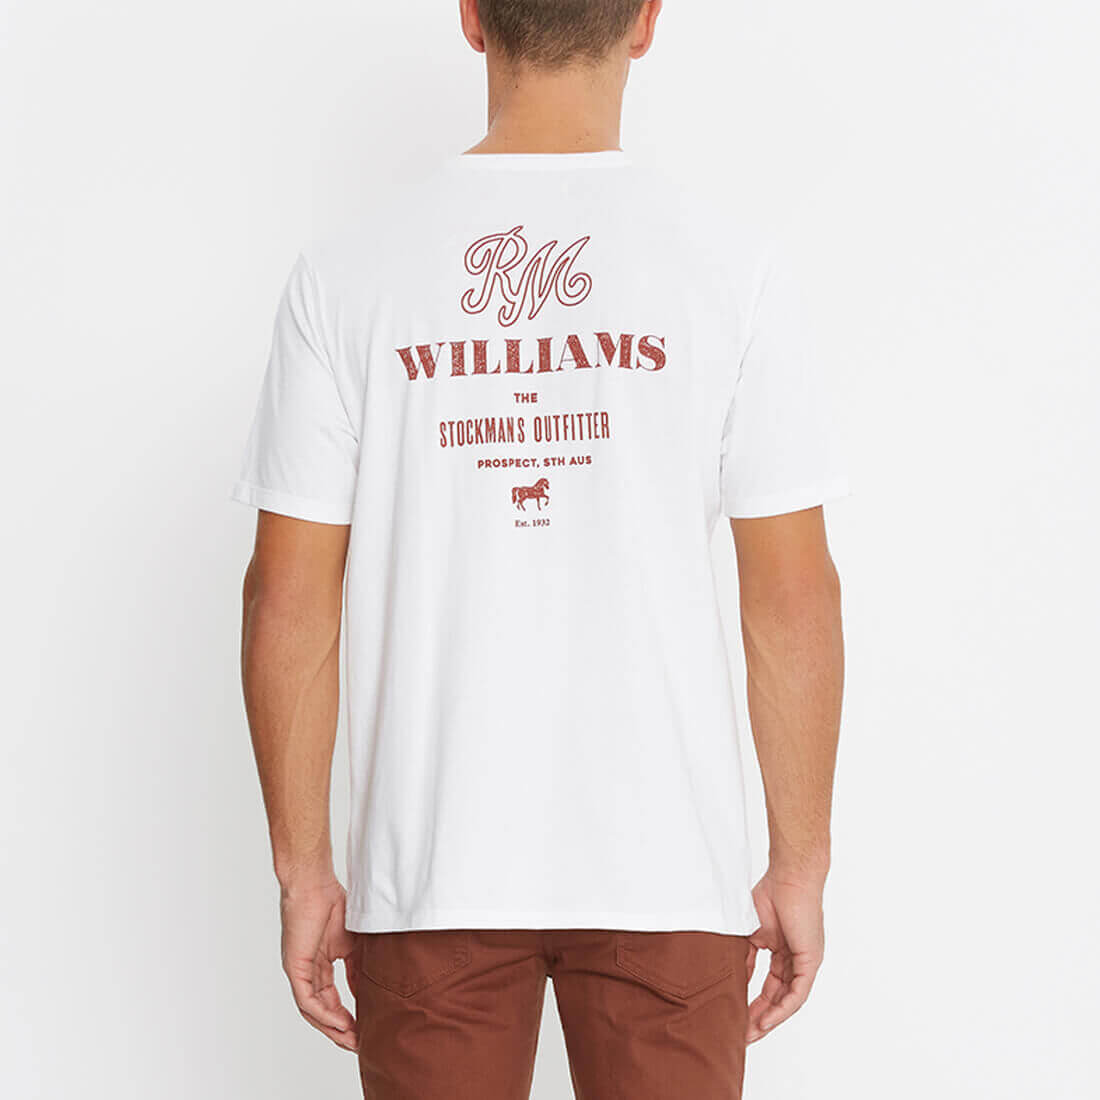 RM Williams Shirts – A Farley